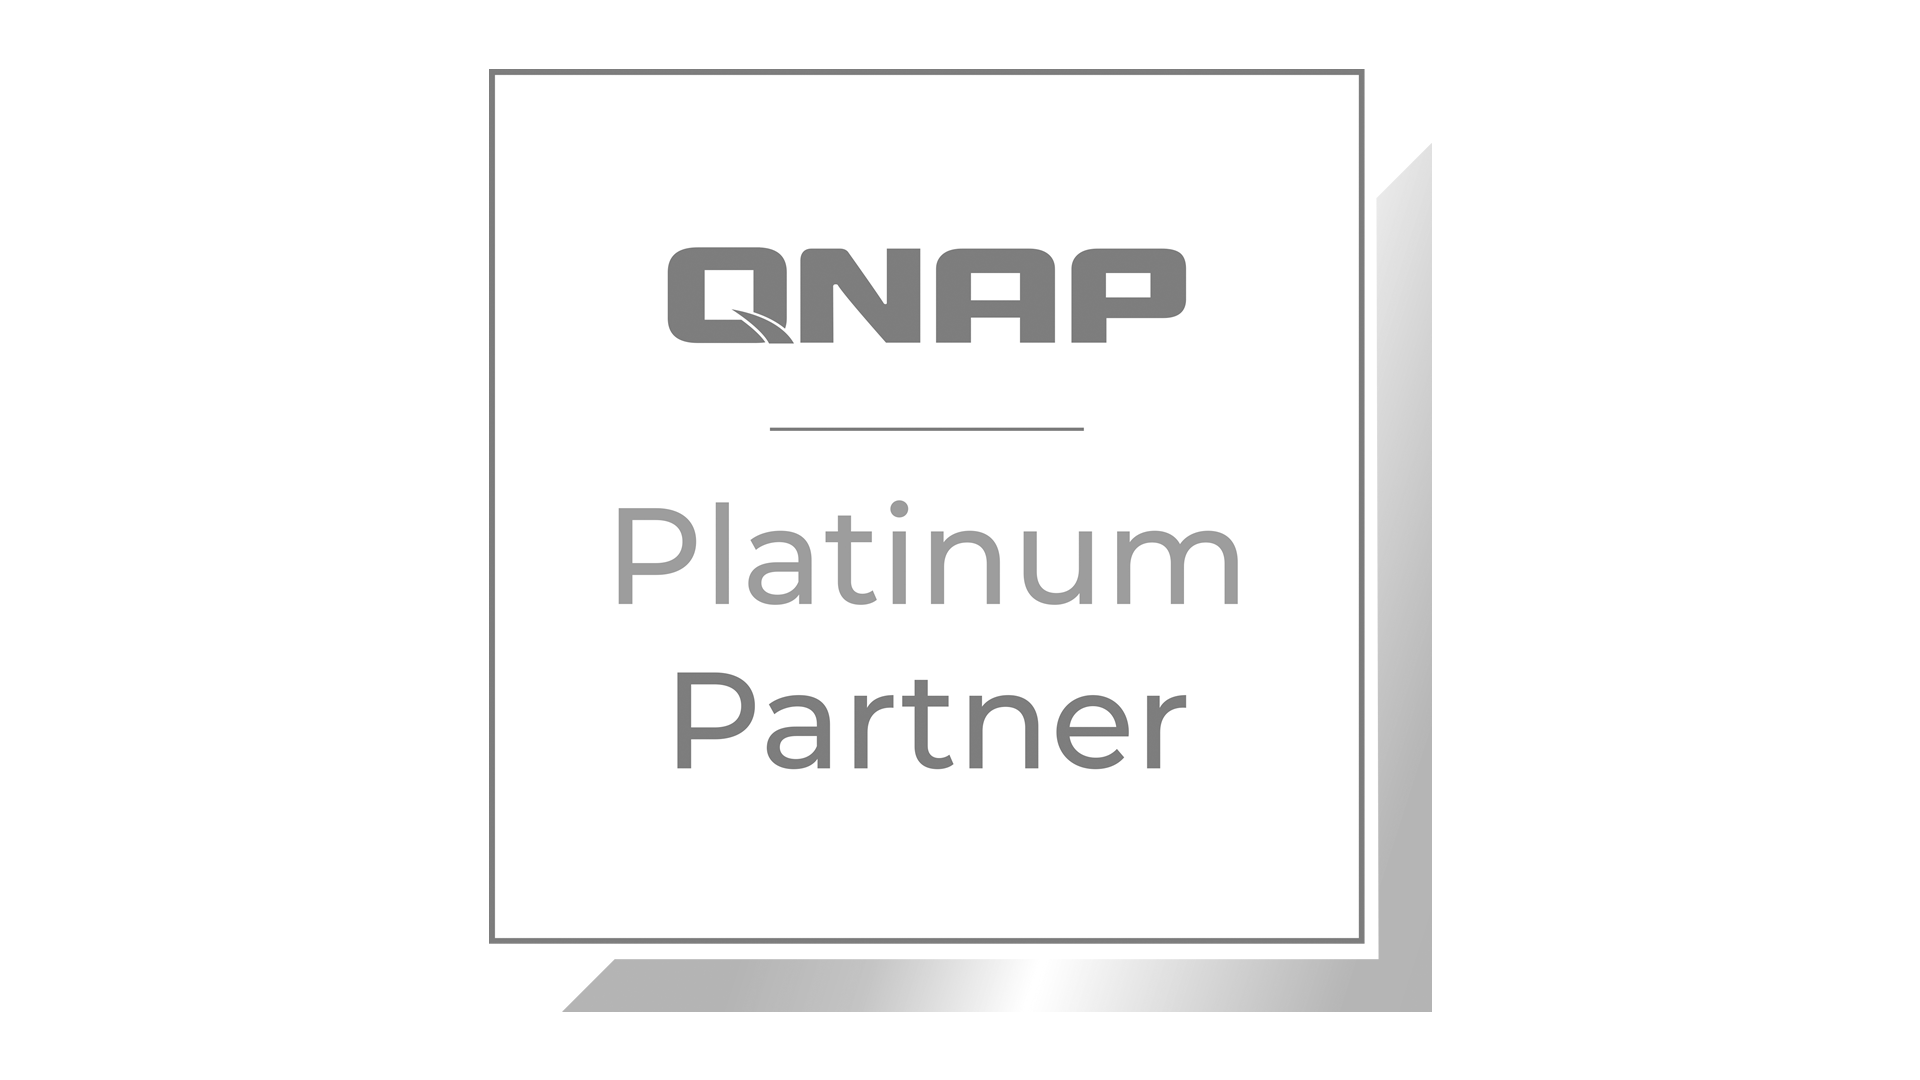 QNAP Platinum Partner